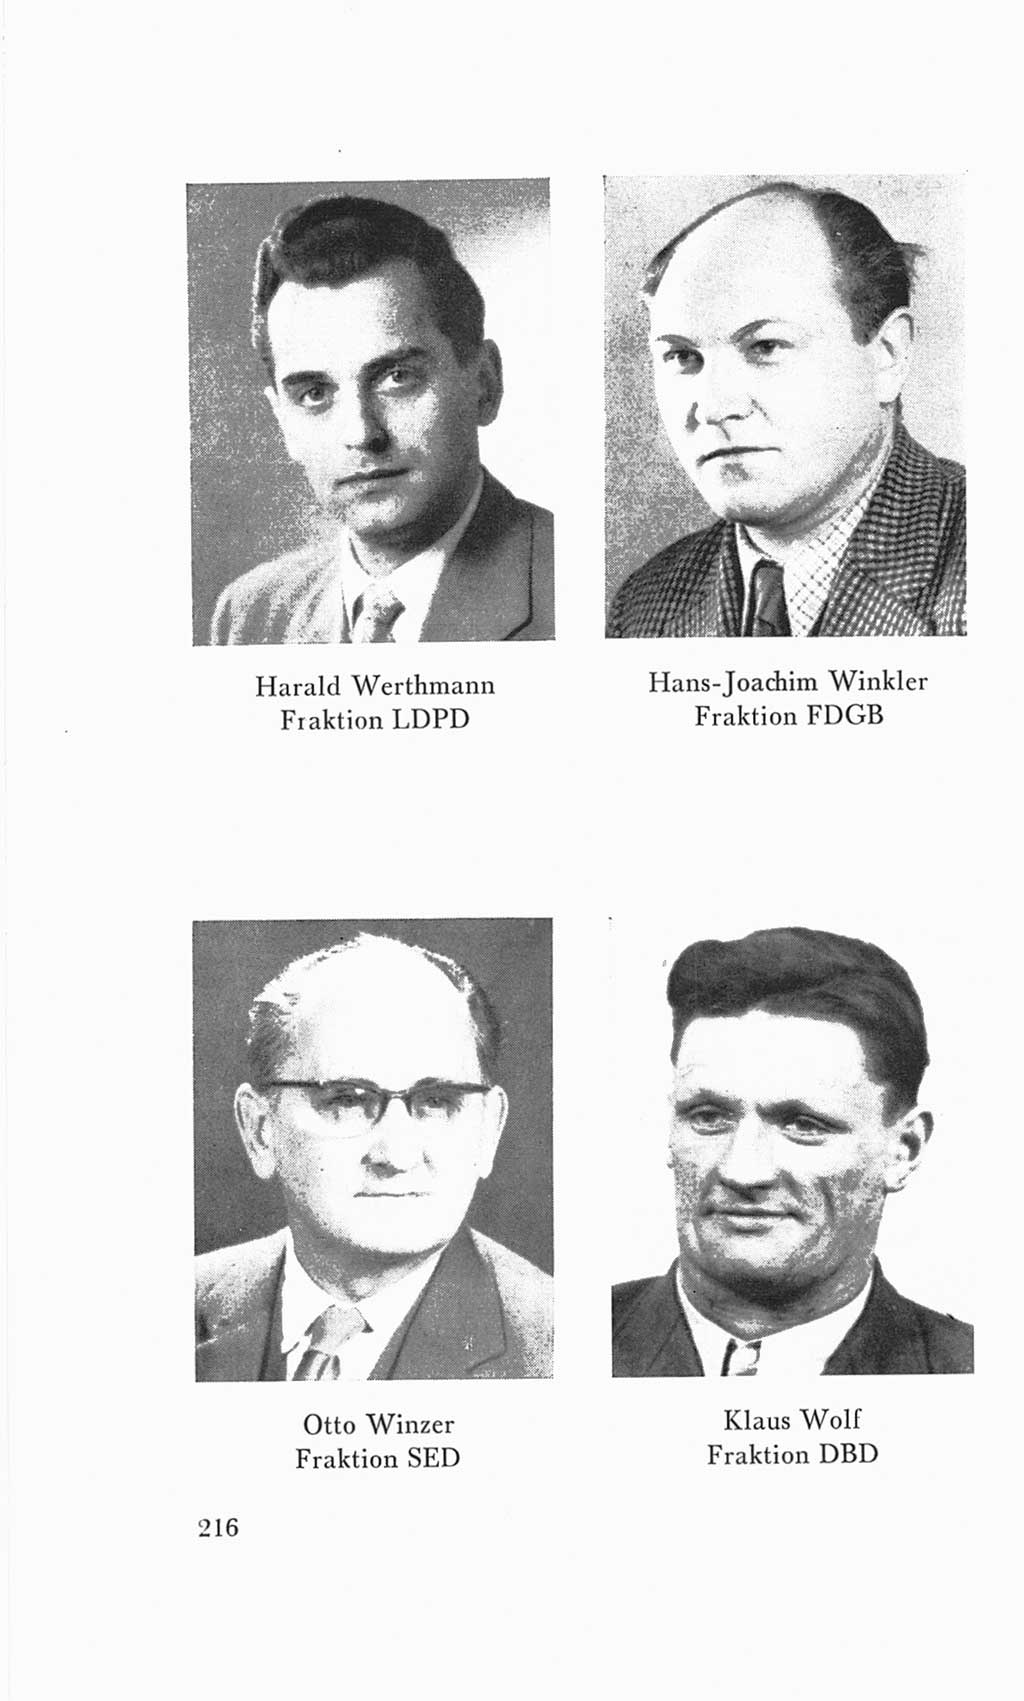 Handbuch der Volkskammer (VK) der Deutschen Demokratischen Republik (DDR), 3. Wahlperiode 1958-1963, Seite 216 (Hdb. VK. DDR 3. WP. 1958-1963, S. 216)